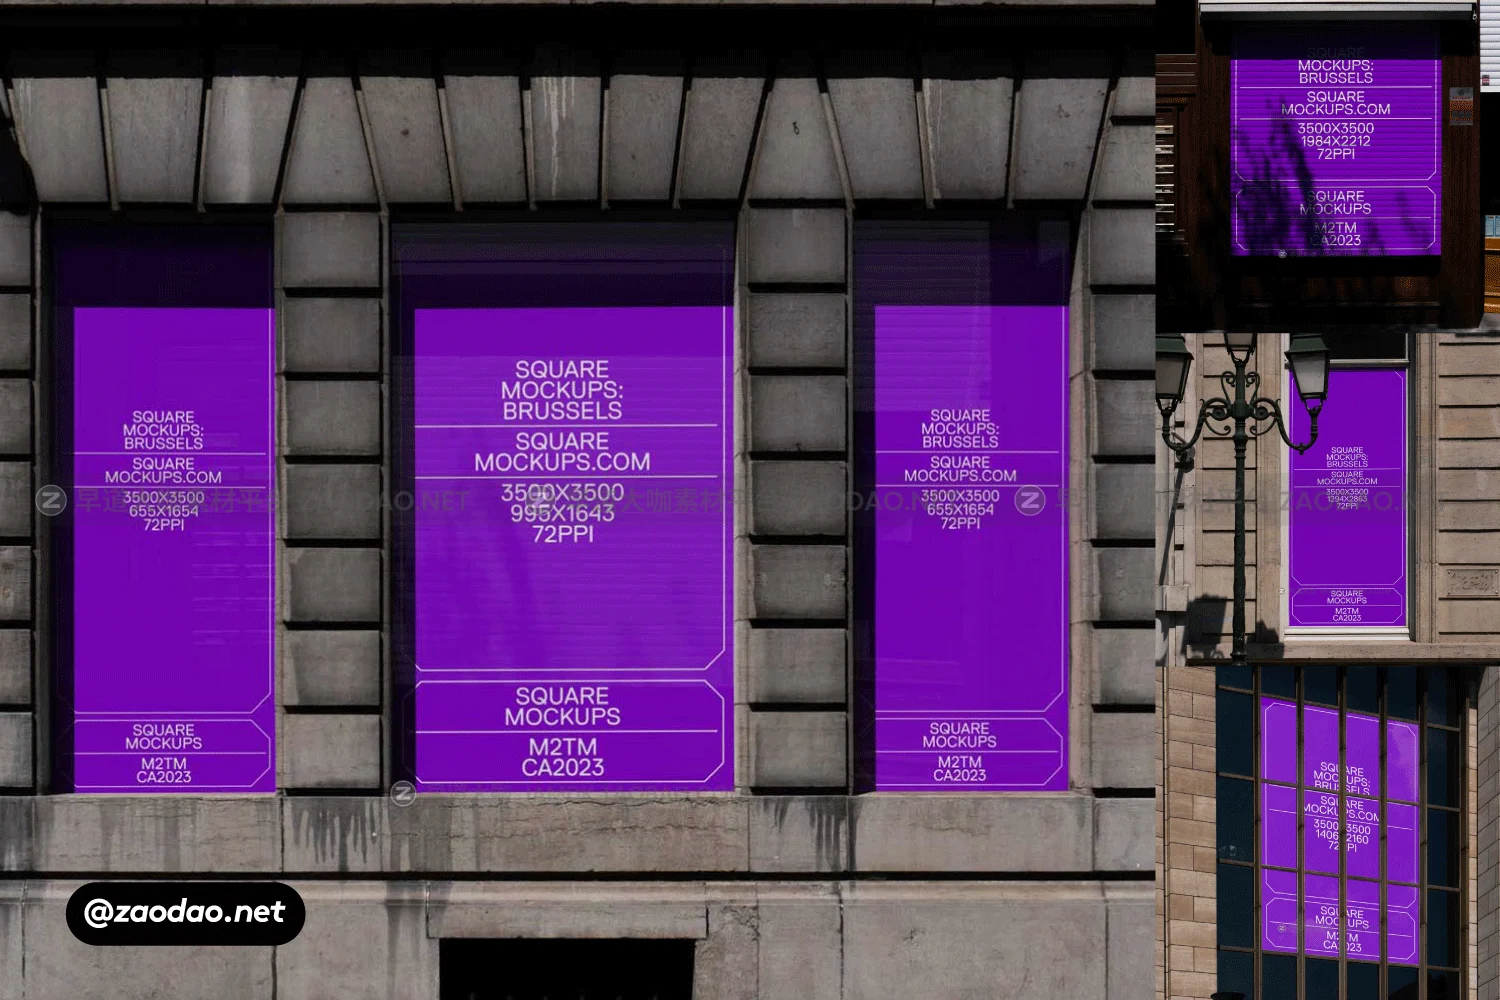 时尚欧美风城市街头墙体商场门店玻璃贴纸海报招贴广告牌设计展示PSD样机模板 Windowfront Mockup Scene Brussels Series Vol1插图